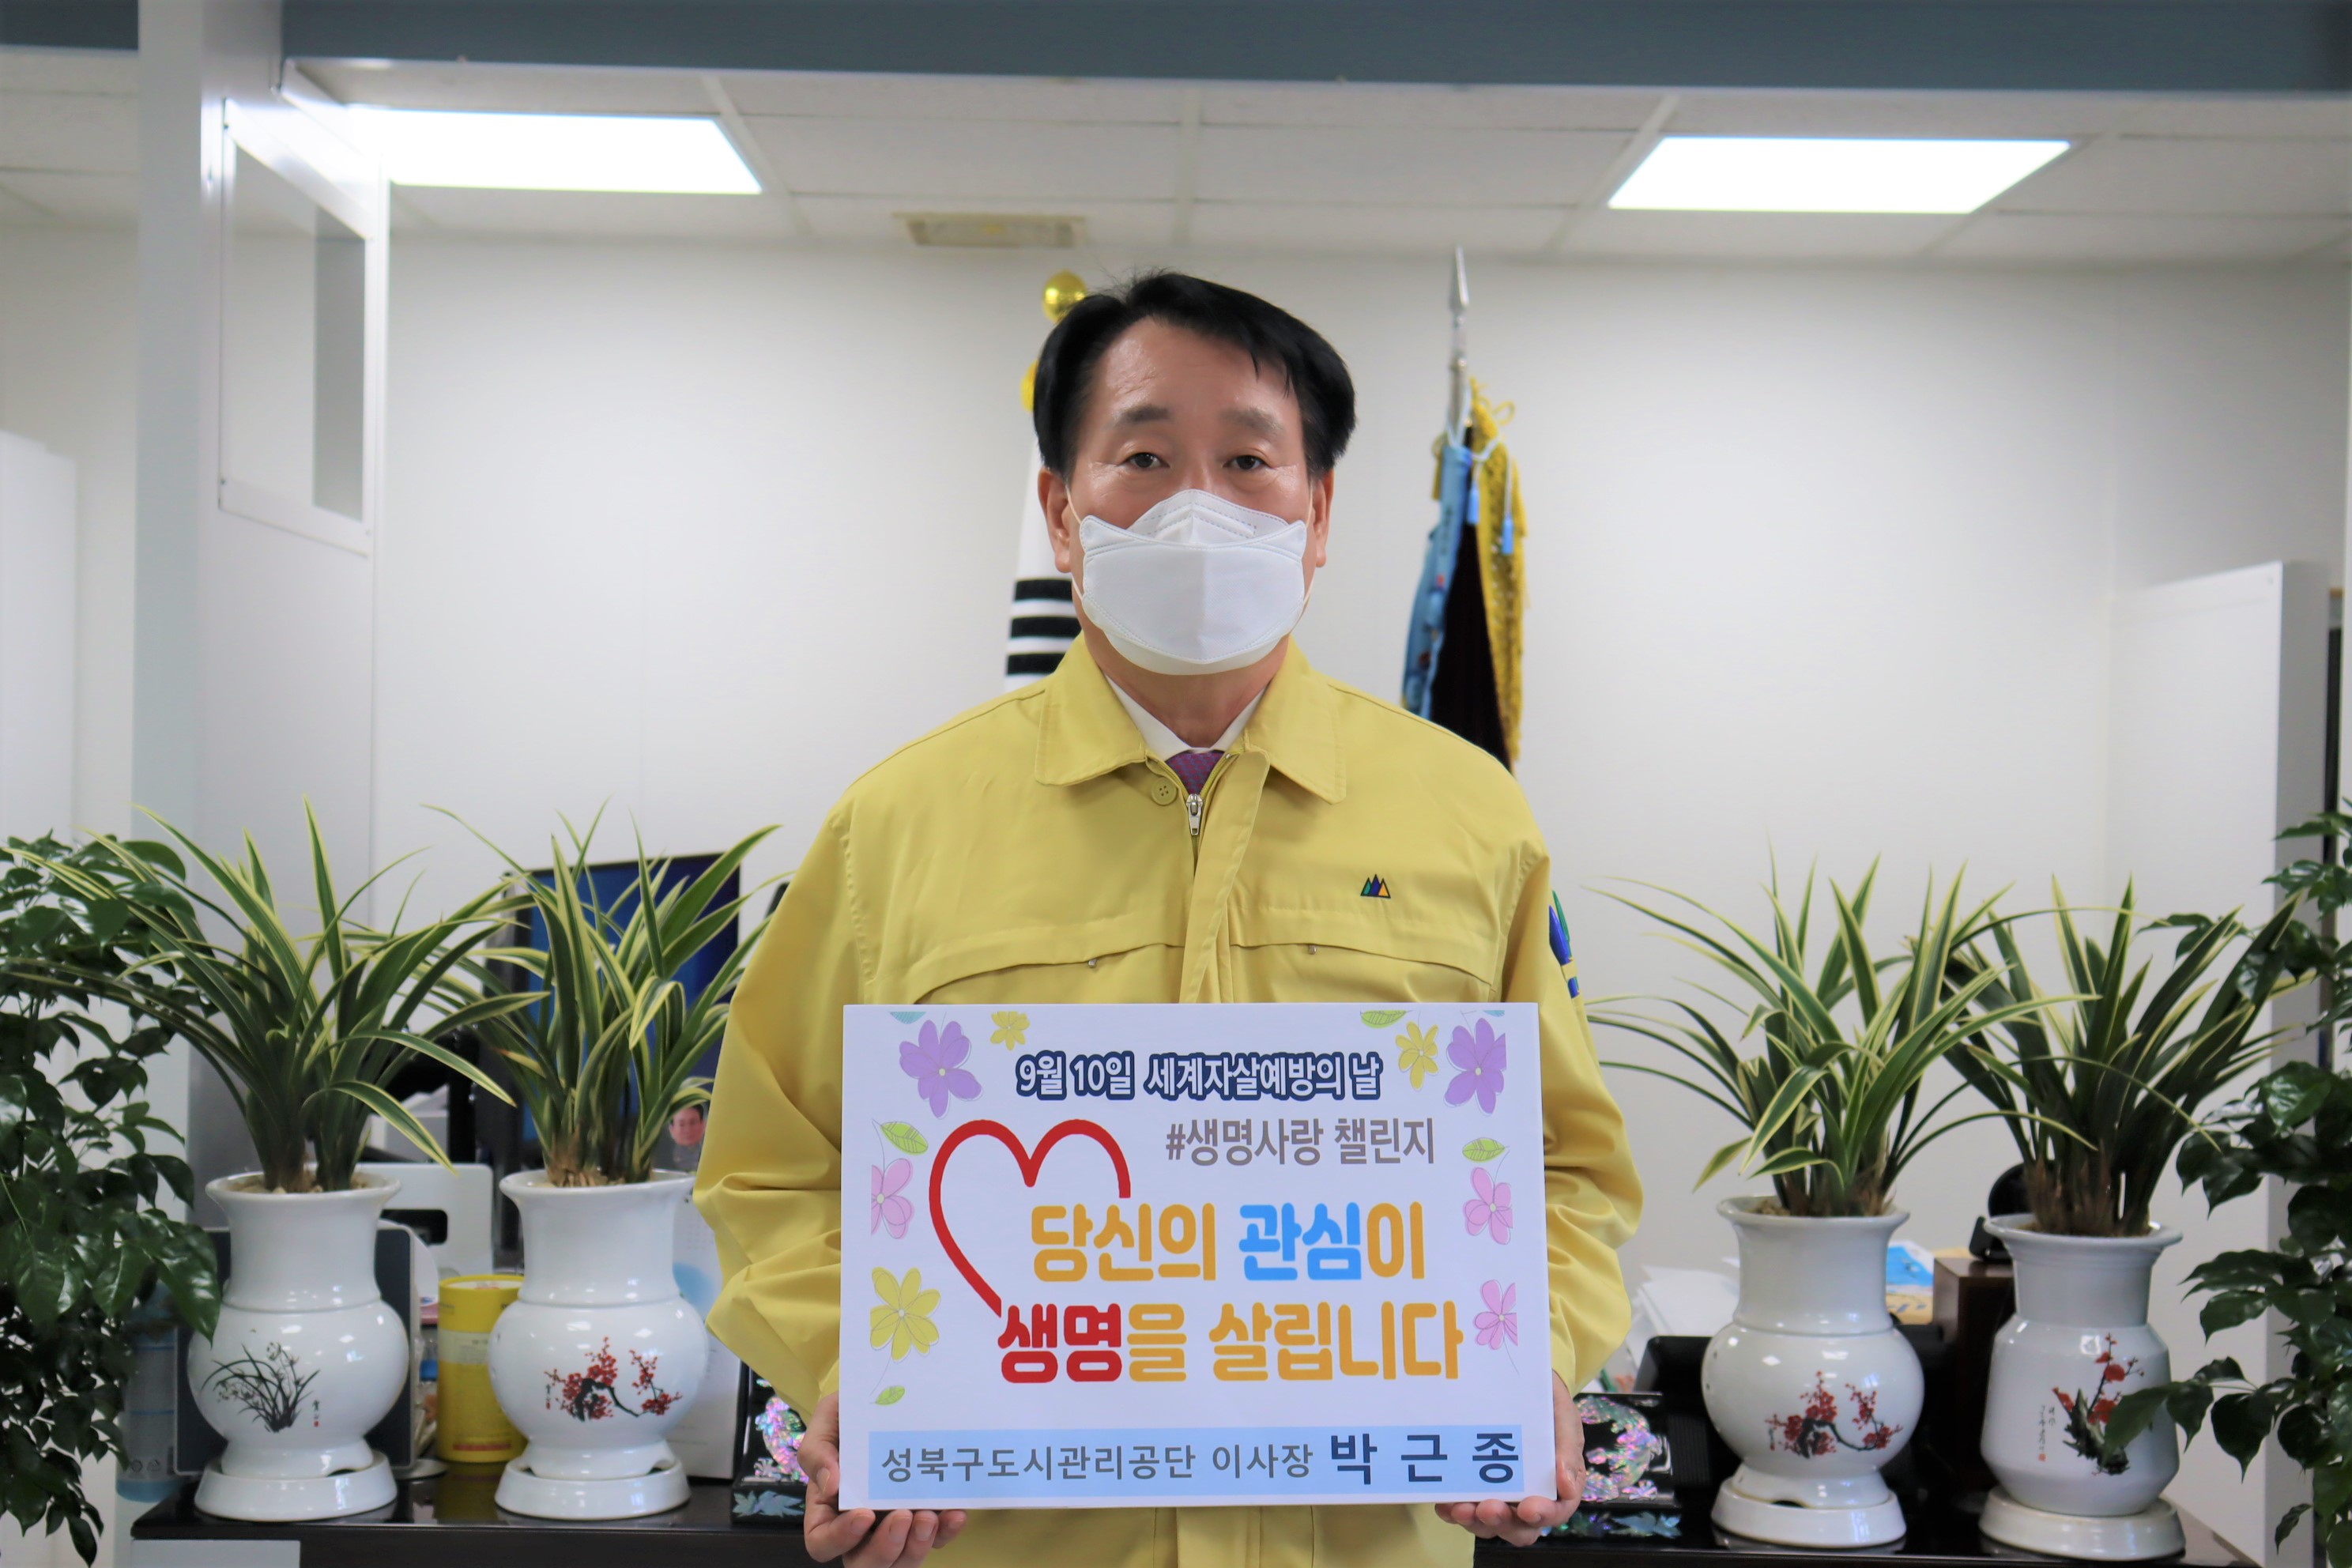 23일 박근종 이사장님은 성북구의회 김일영 의장님의 지목을 받아 생명의 소중함의 알리기 위한 '생명사랑챌린지' 참여